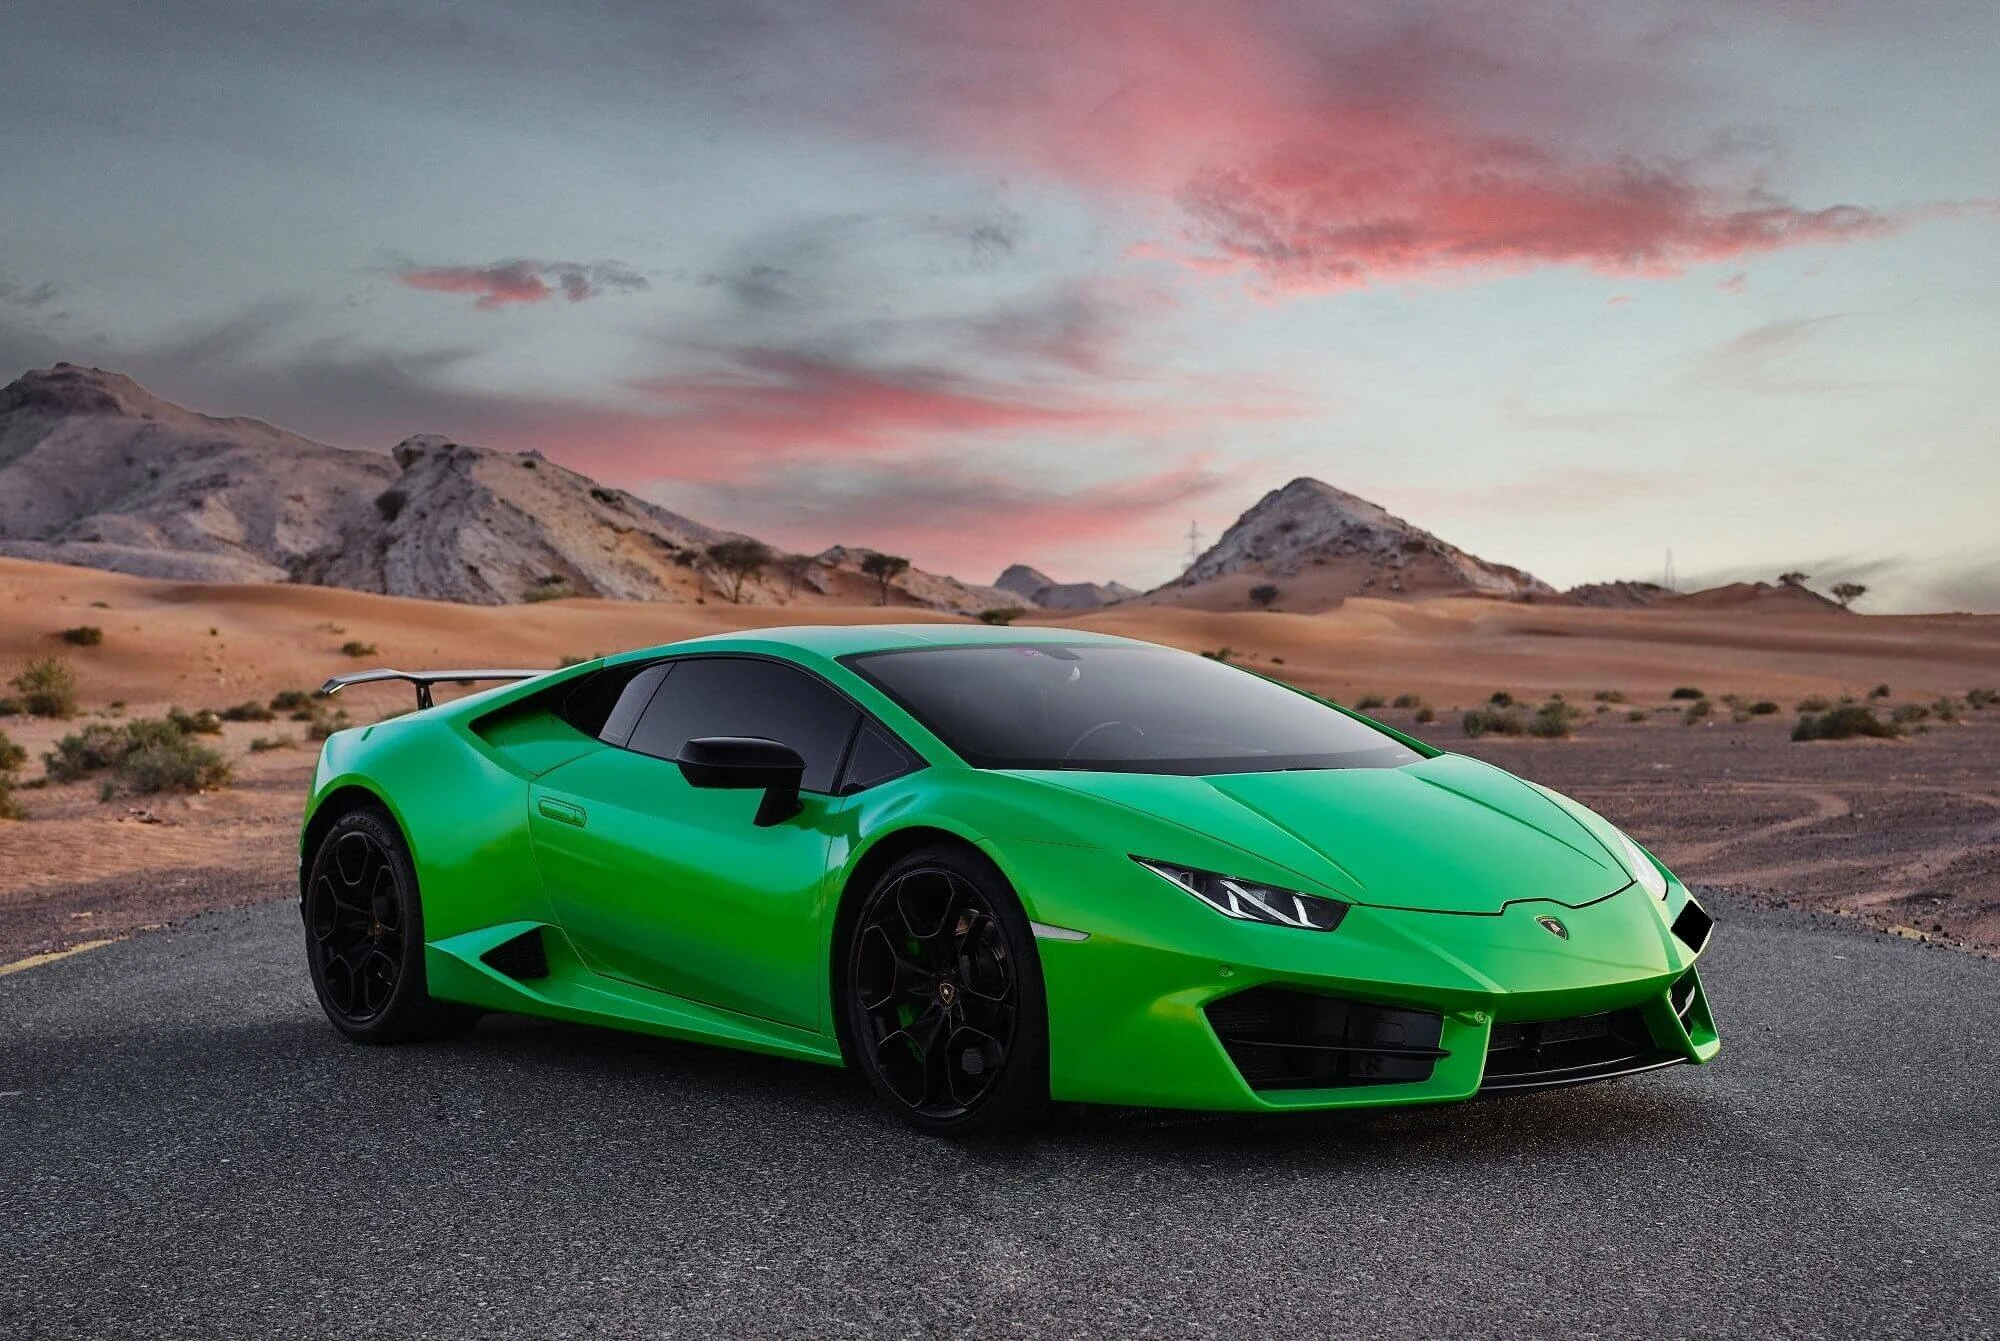 Lamborghini Huracán Verde